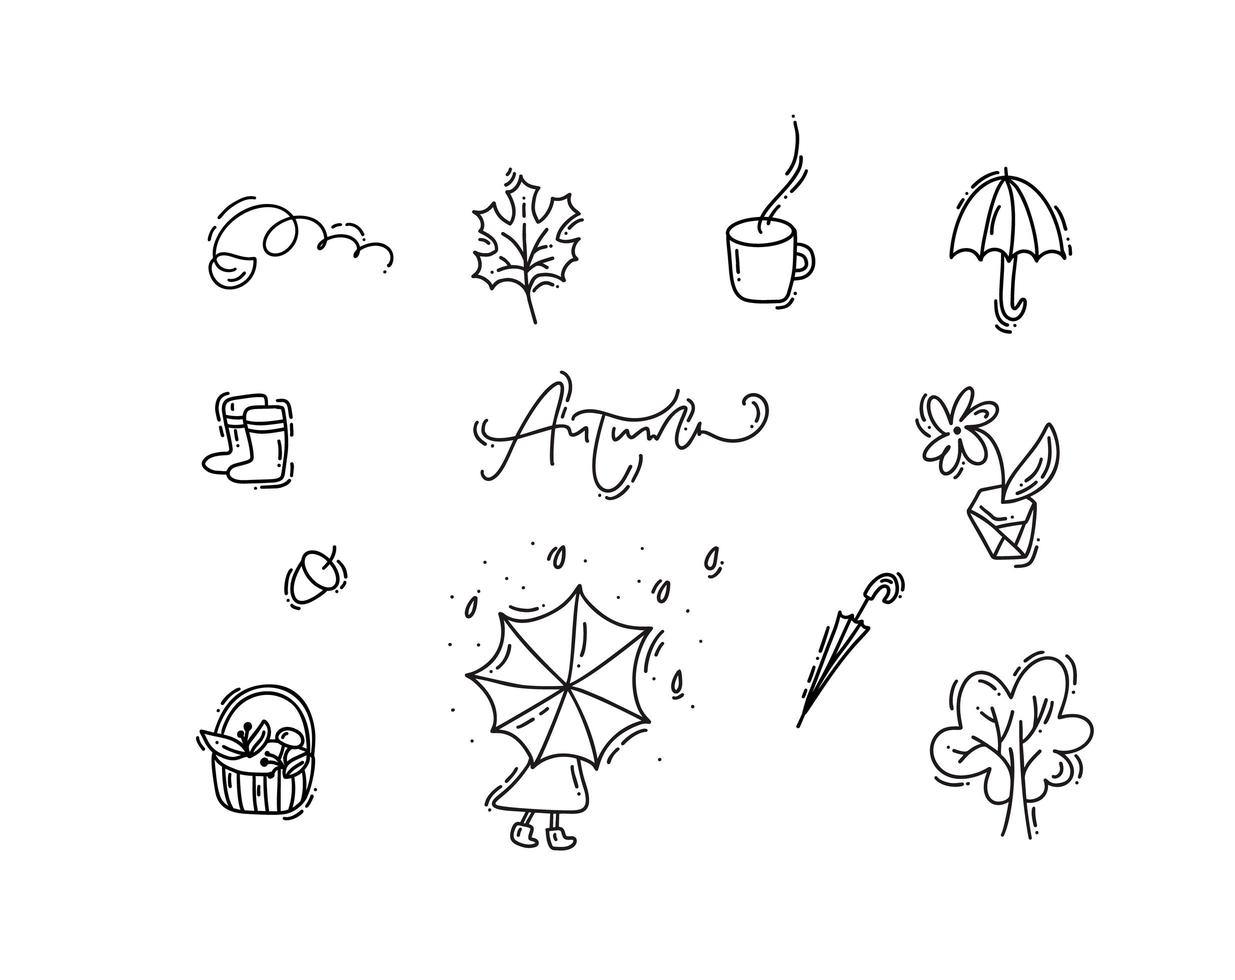 conjunto de elementos florales de vector monoline doodle. diseño gráfico de la colección de otoño. hierbas, hojas, paraguas. decoración de otoño moderna de acción de gracias dibujada a mano